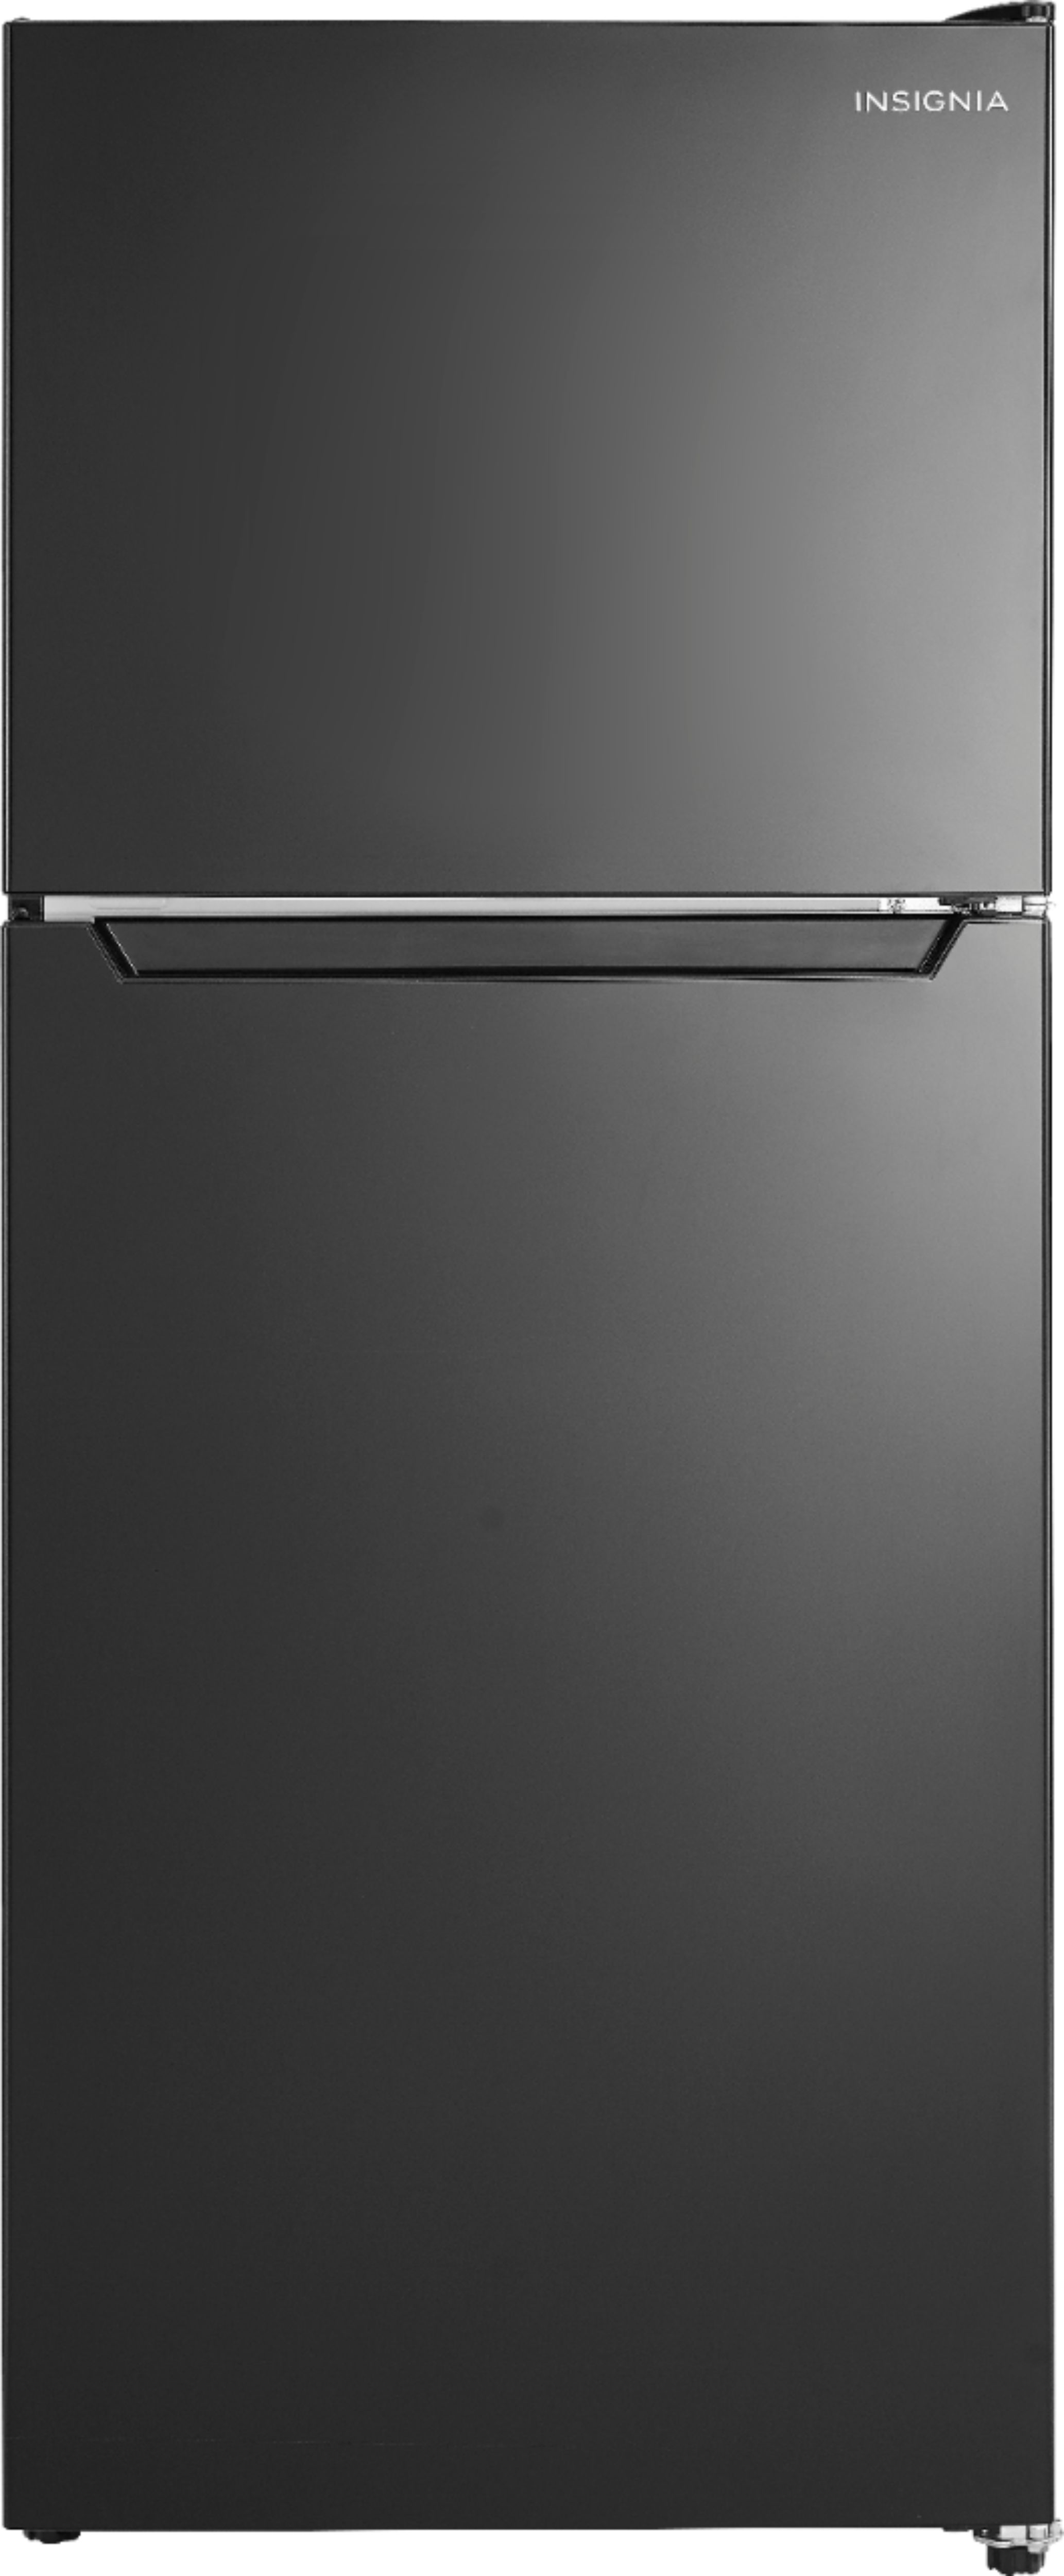 44++ Insignia refrigerator door hinge info